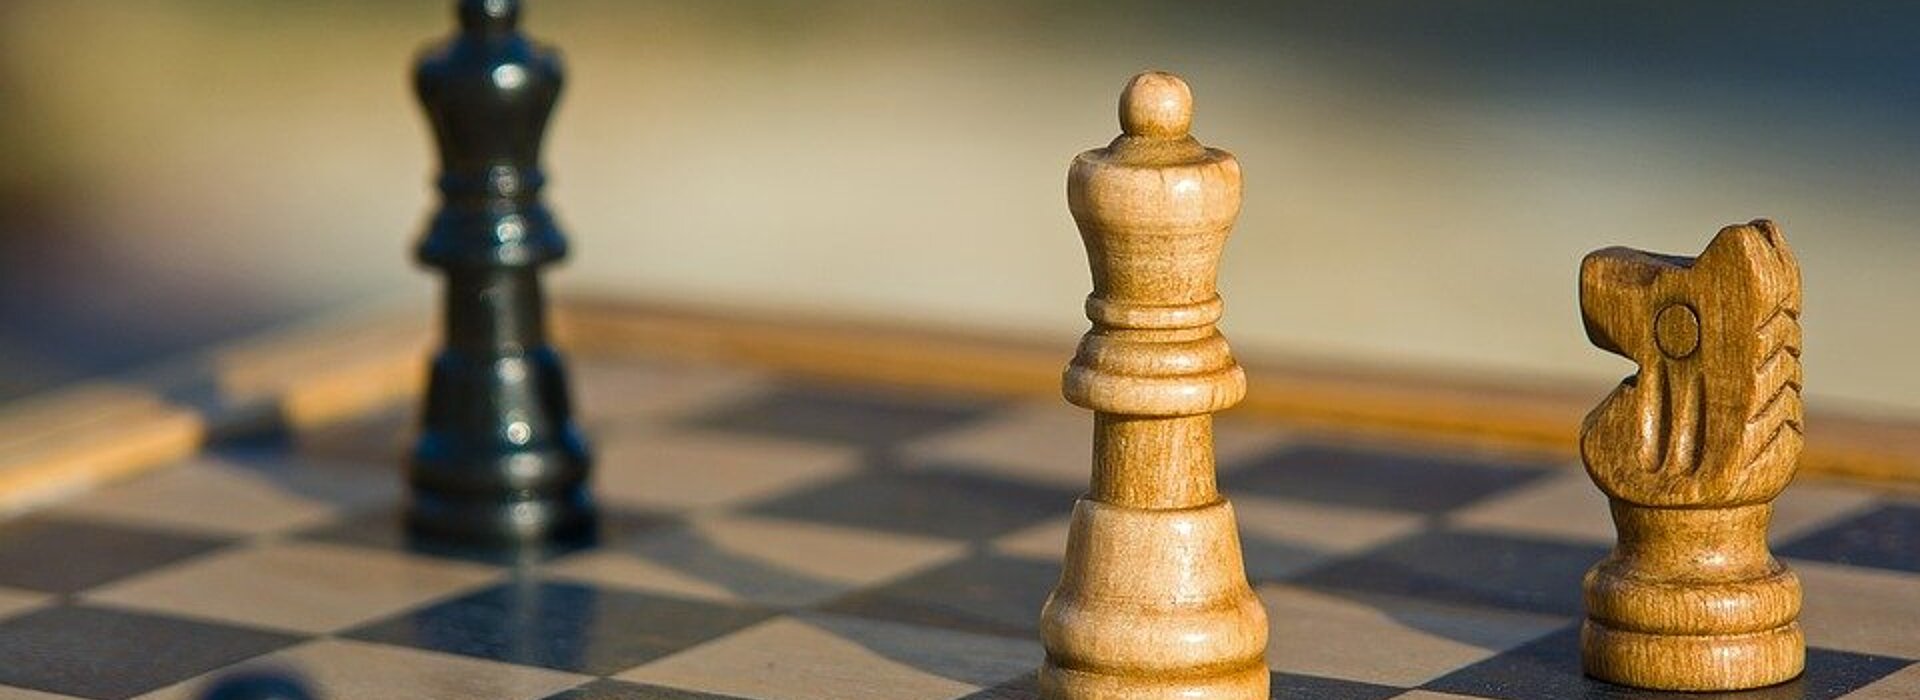 Contabilidade Financeira: Disputa do título mundial de xadrez